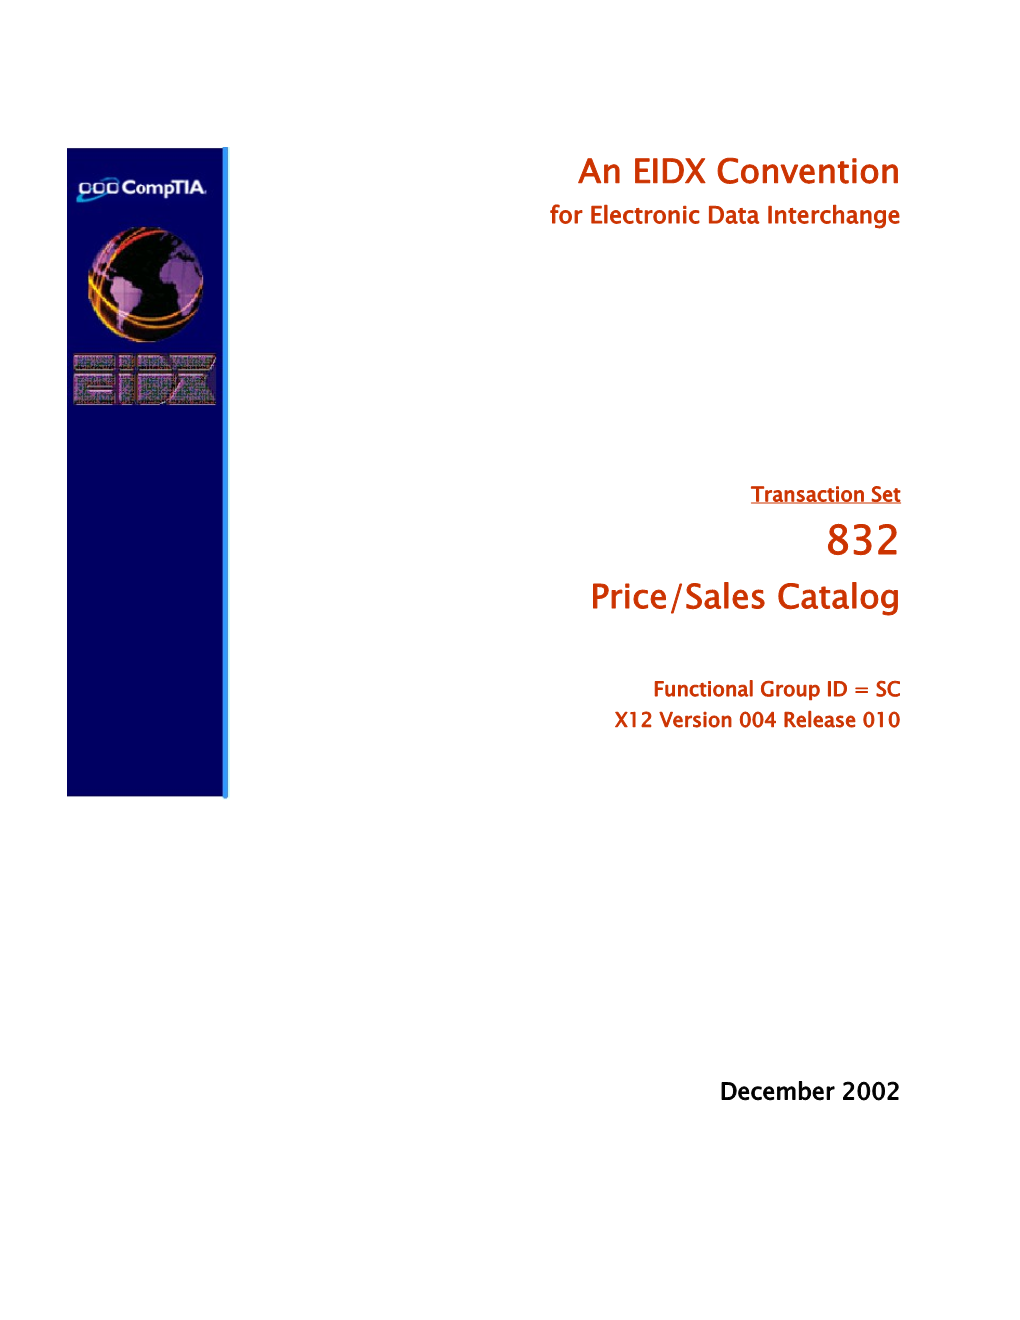 EIDX 830 Planning Schedule